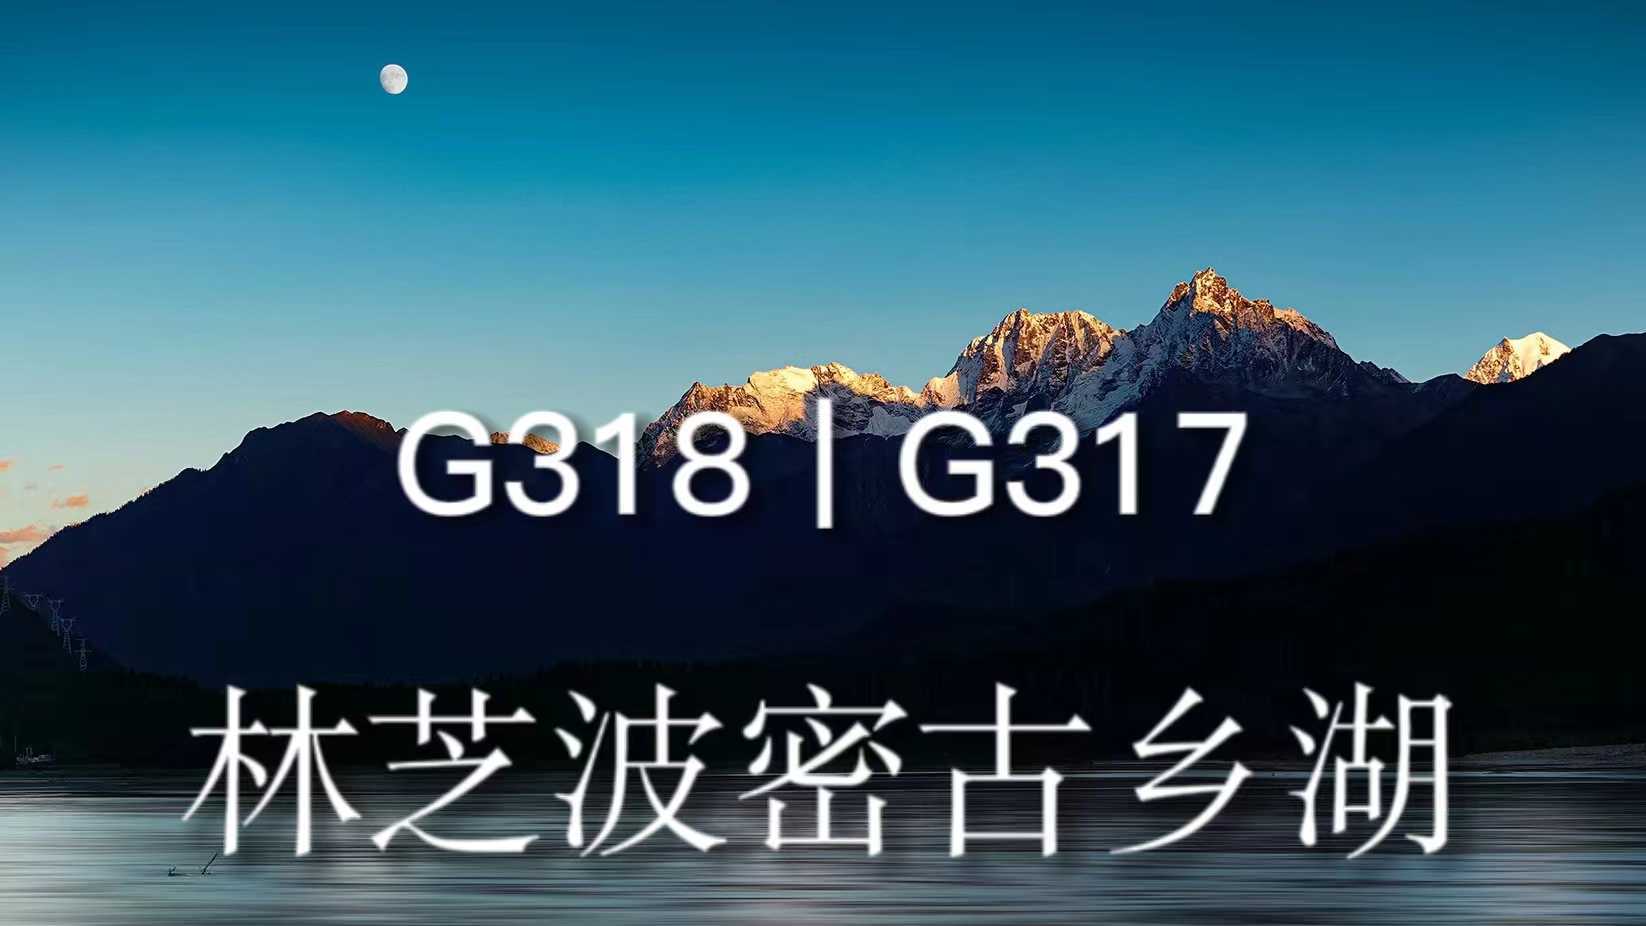 【西藏VLOG】雪山/月照金山/冰湖/晚霞丨川藏线G318自驾旅拍